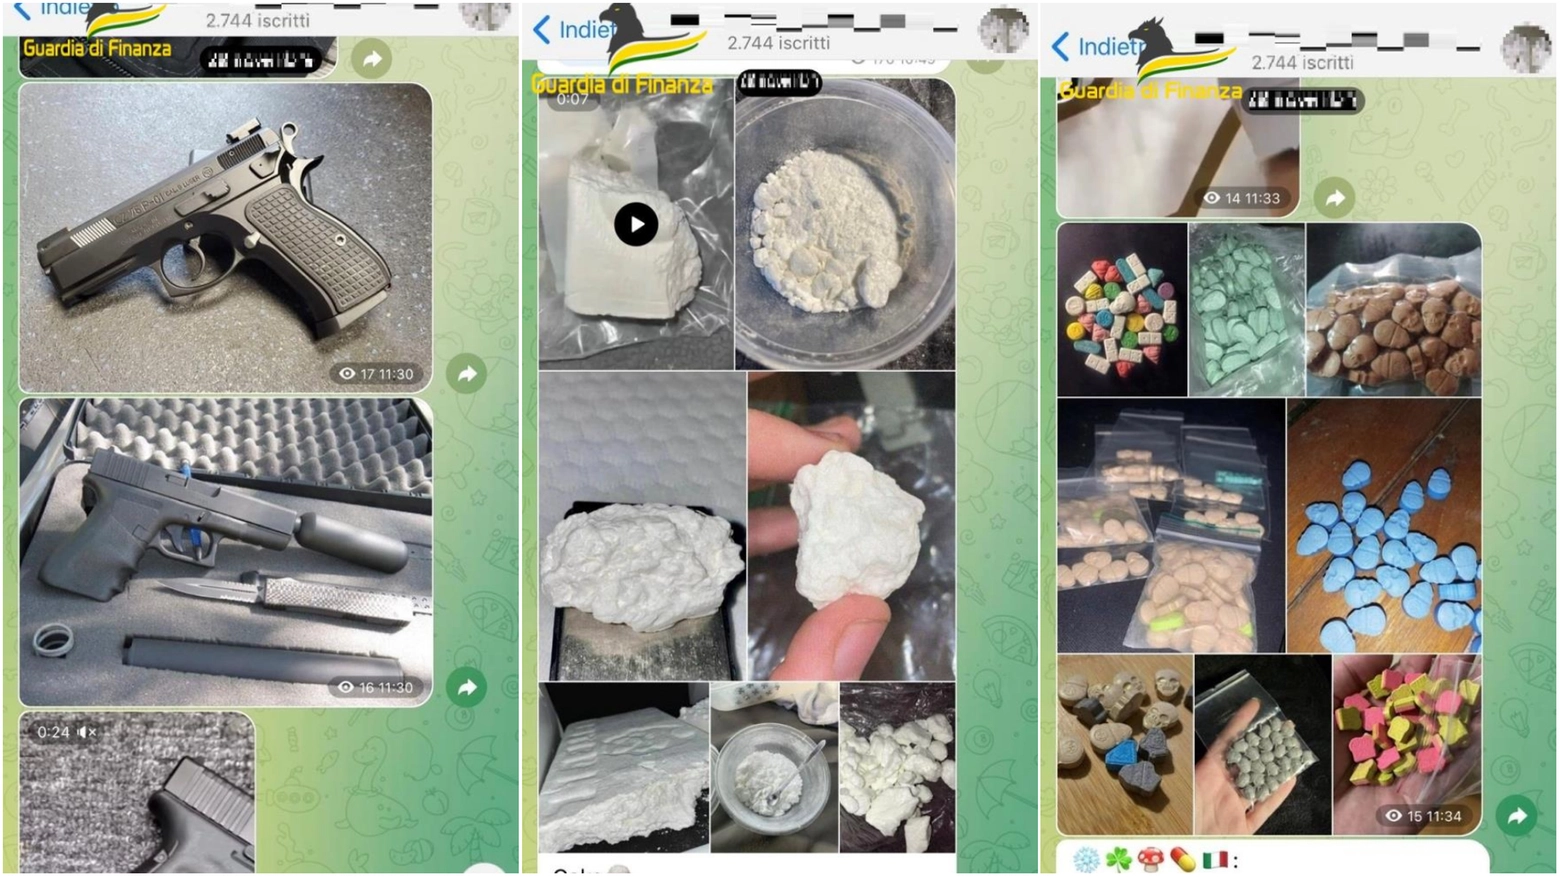 Le immagini delle armi e delle droghe in vendita sul canale Telegram (foto guardia di finanza)